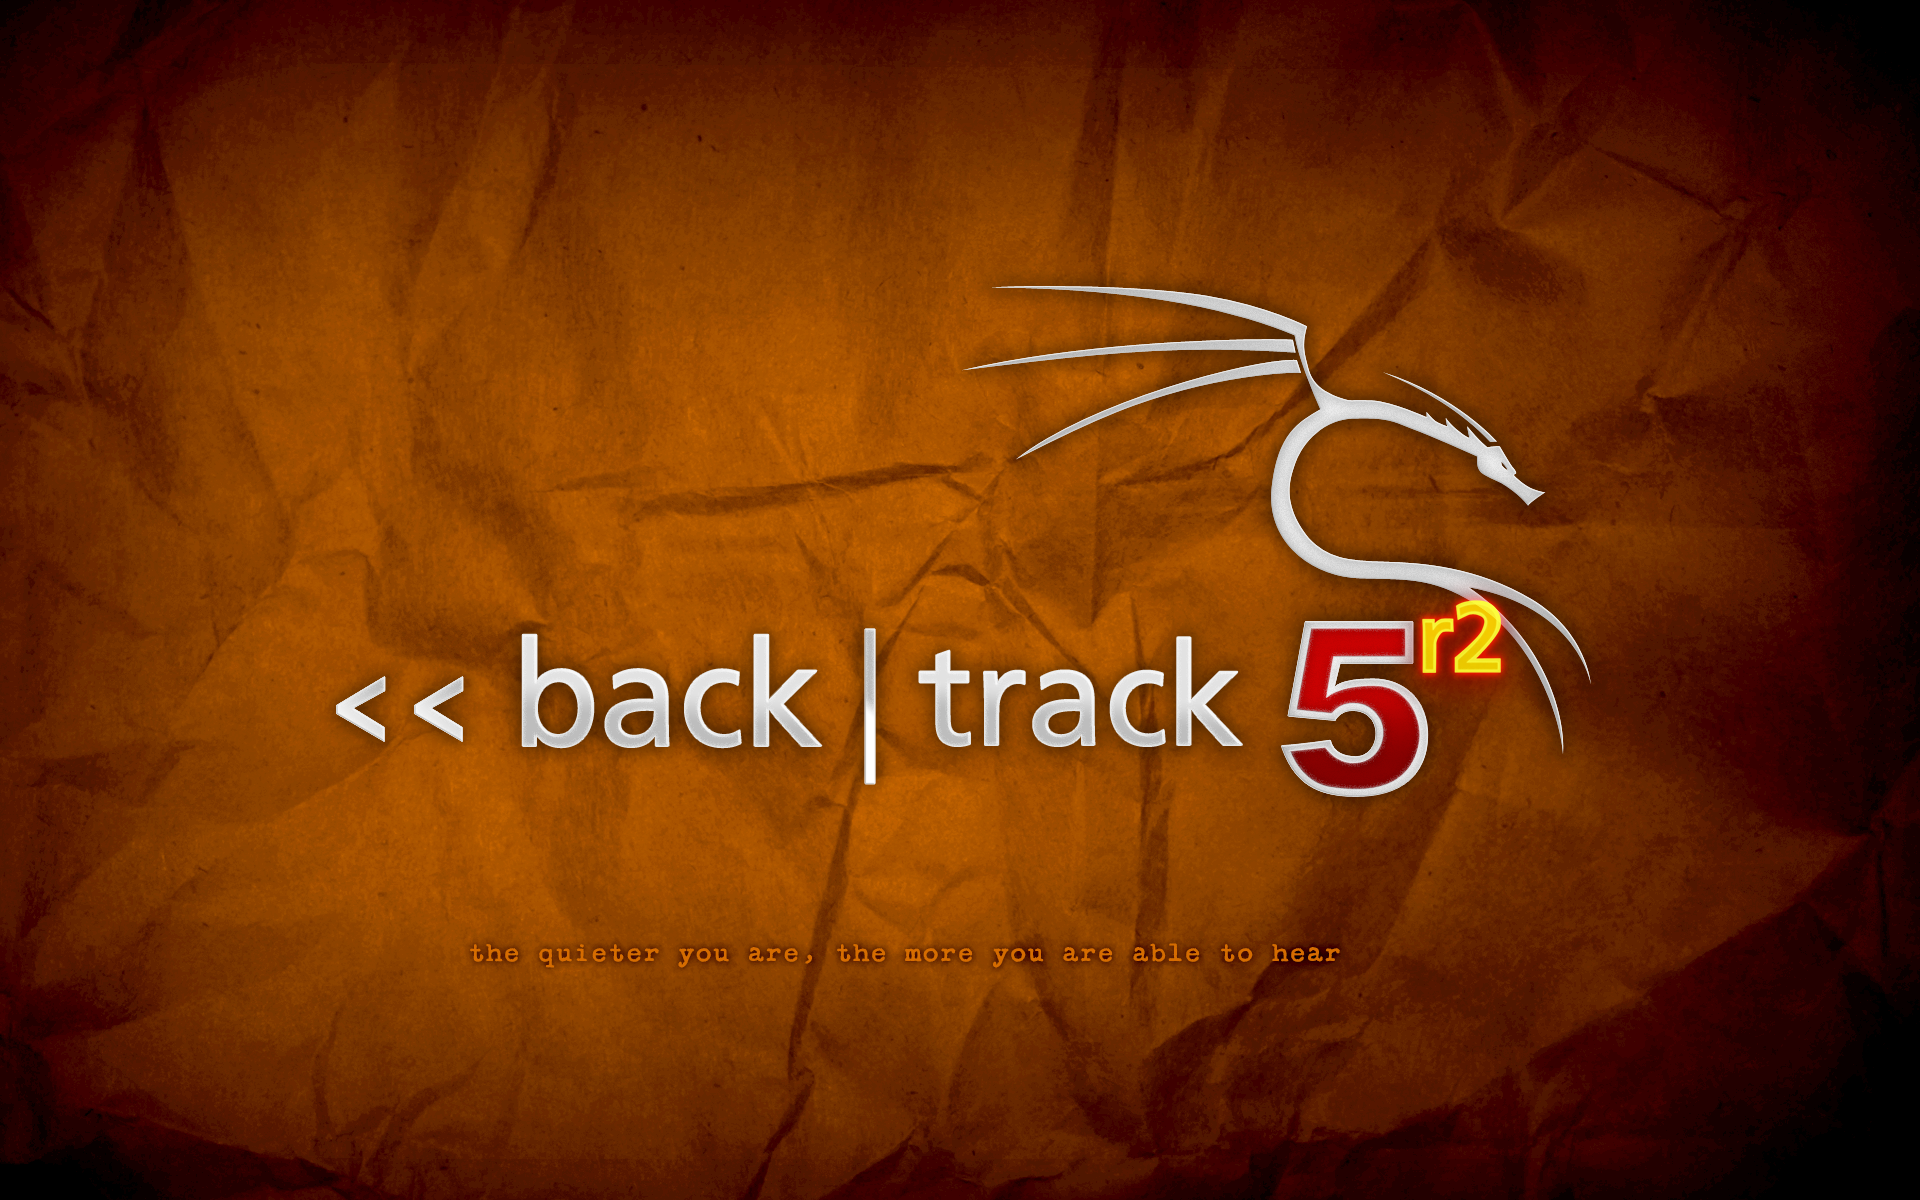 backtrack-5r2-orange.png